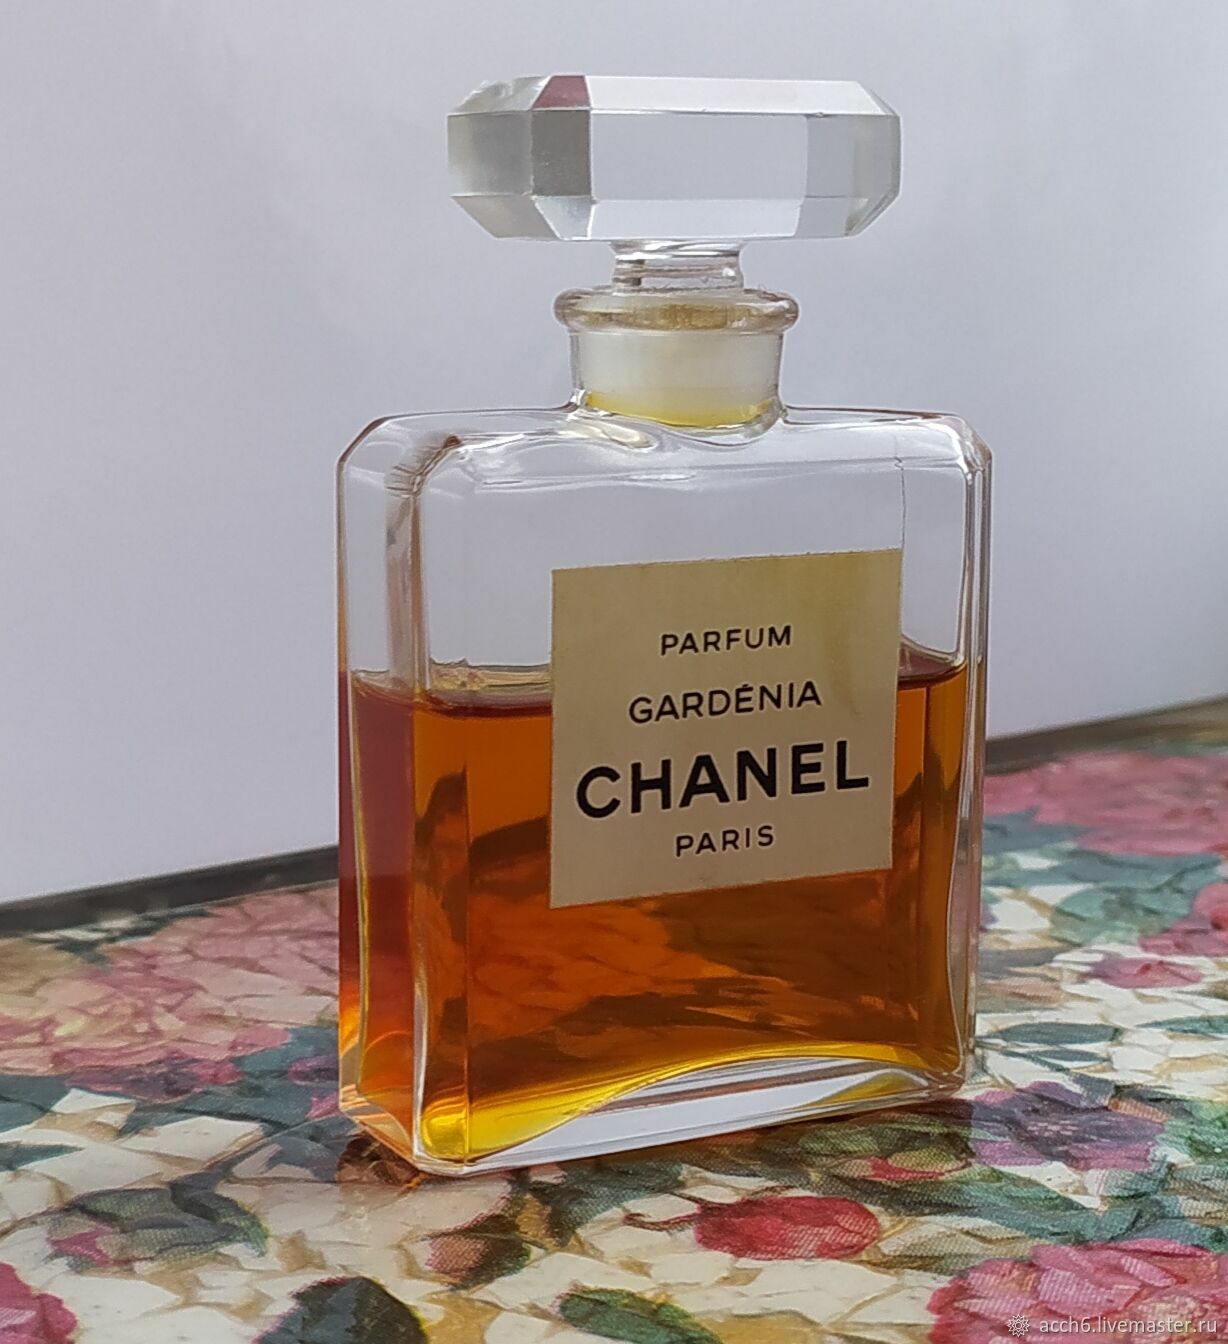 Винтаж: Делюсь Gardenia Chanel, parfum, 28 ml купить в интернет-магазине Ярмарка Мастеров по цене 1000 ₽ – RJ70ARU | Духи винтажные, Омск - доставка по России